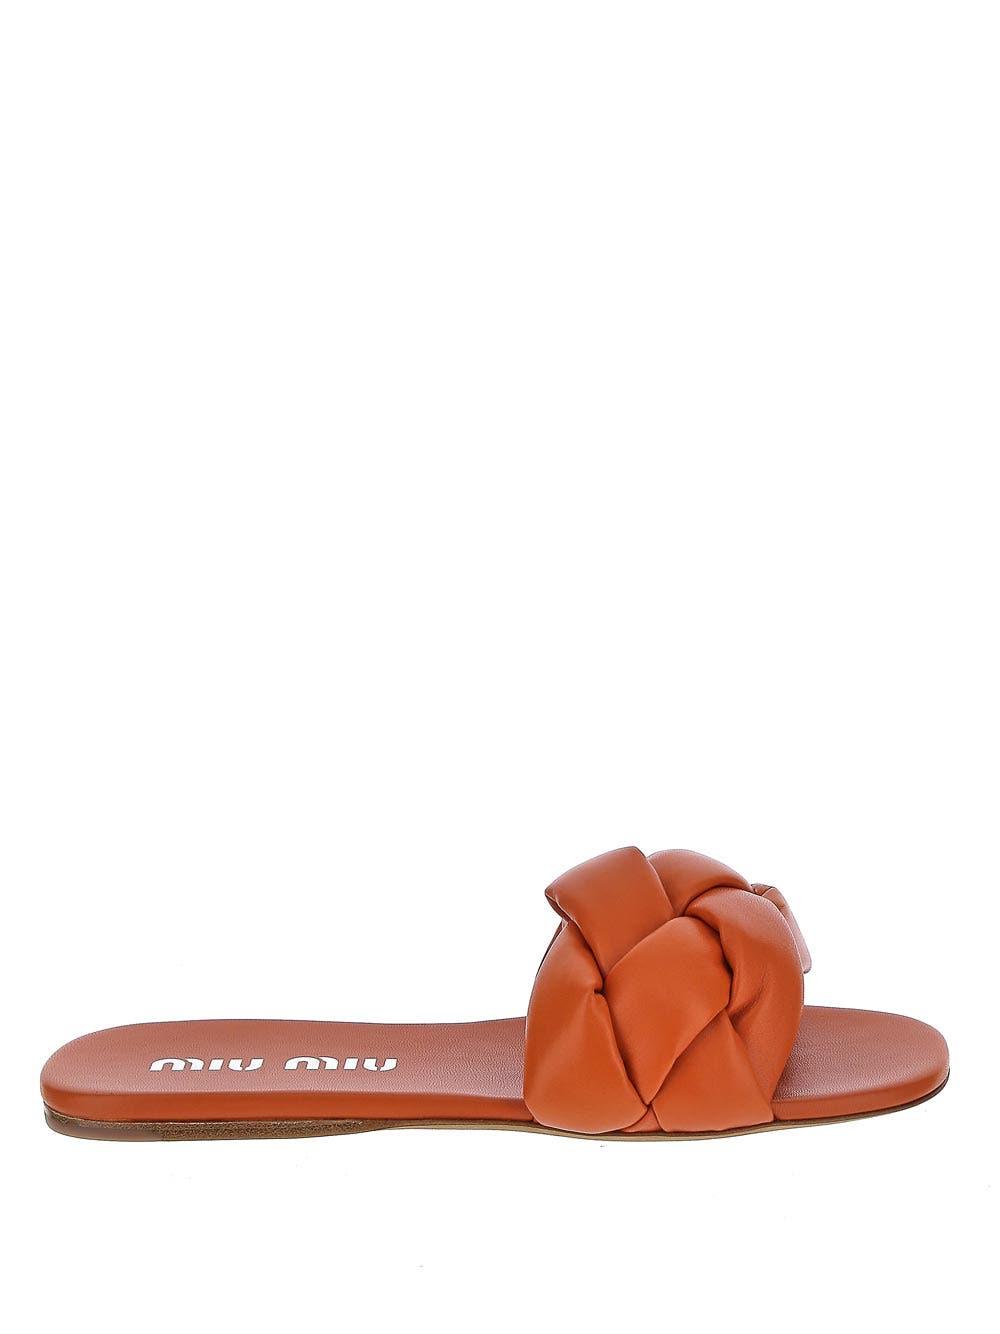 Miu Miu Leather Braided Strap Flat Sandals in Orange | Lyst